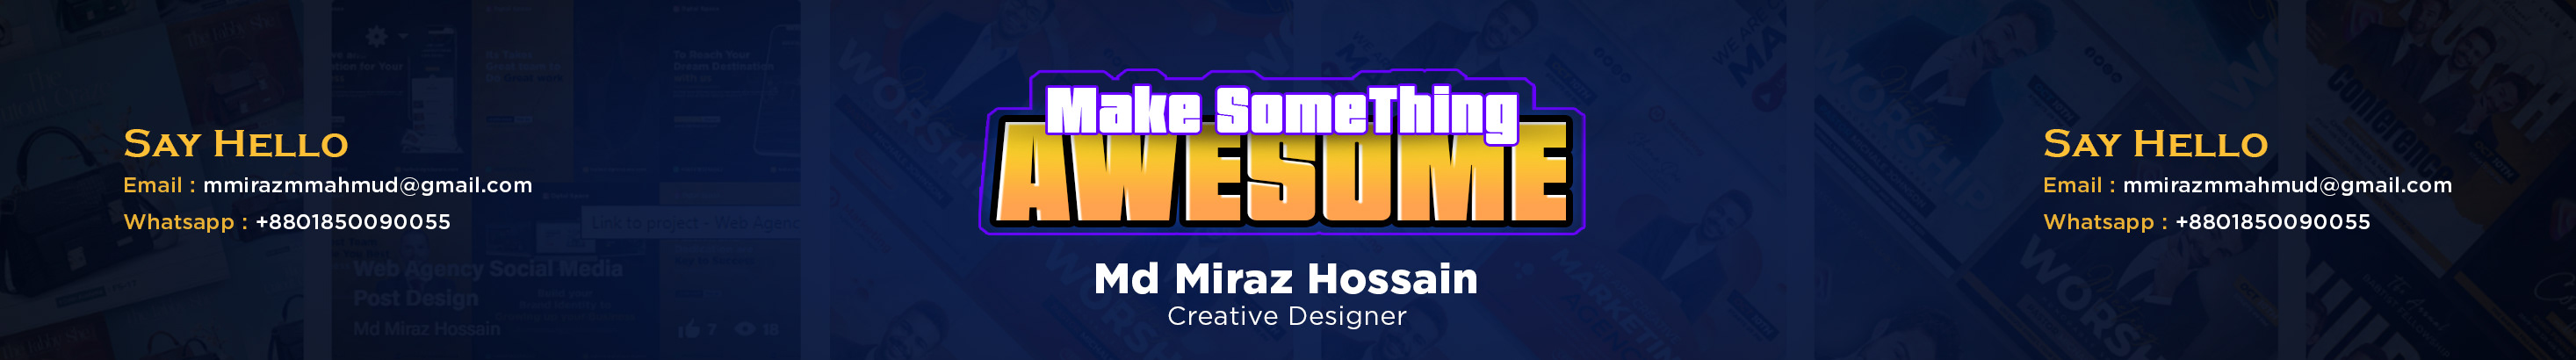 Banner del profilo di Md Miraz Hossain